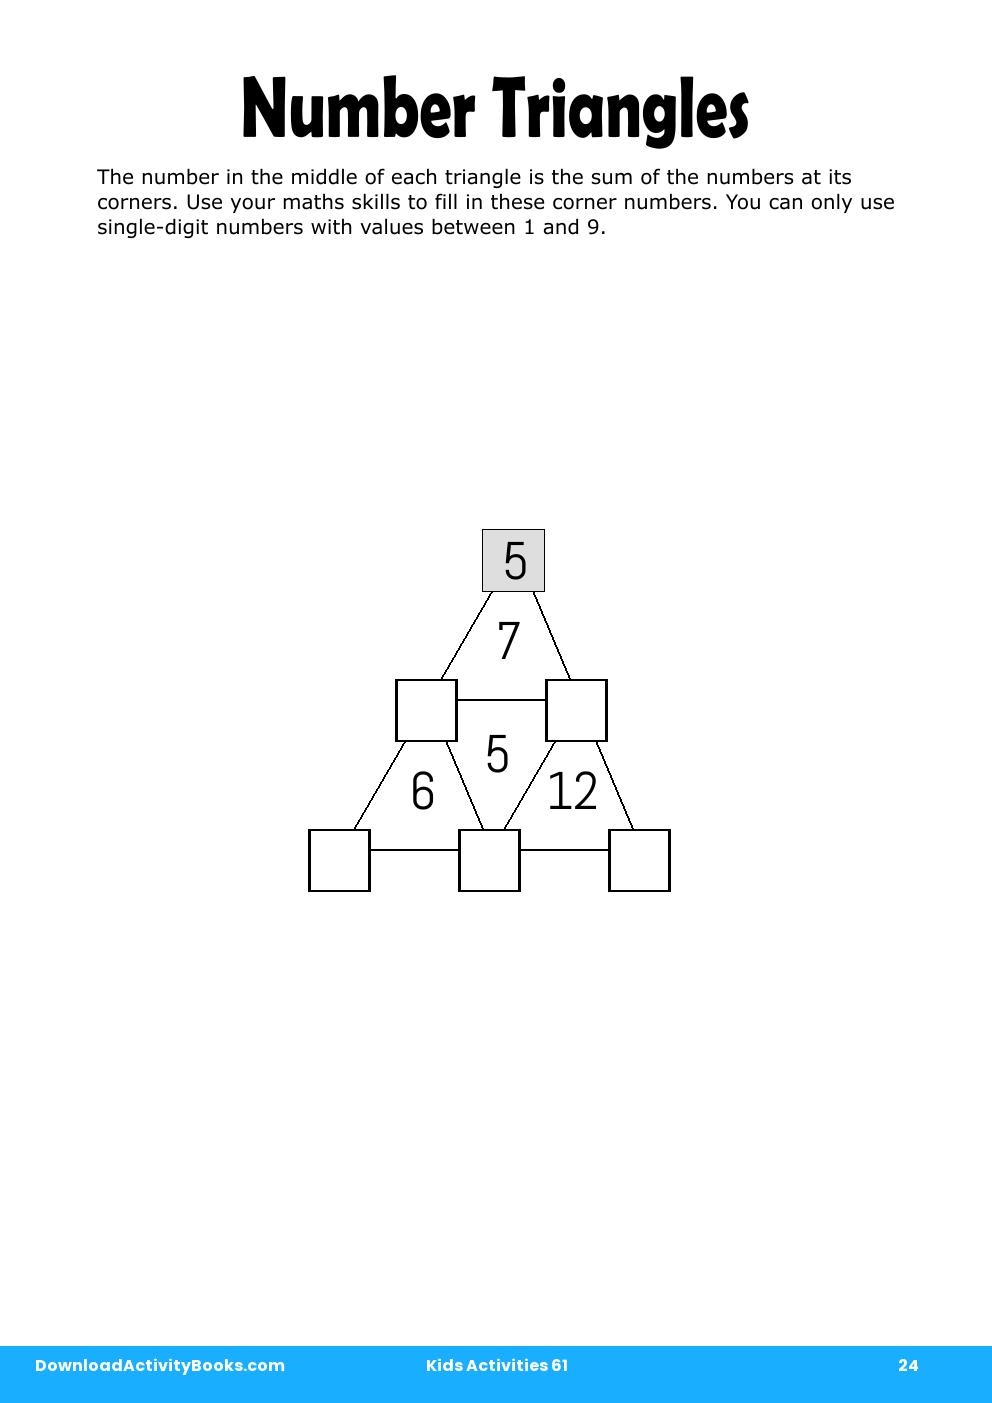 Number Triangles in Kids Activities 61